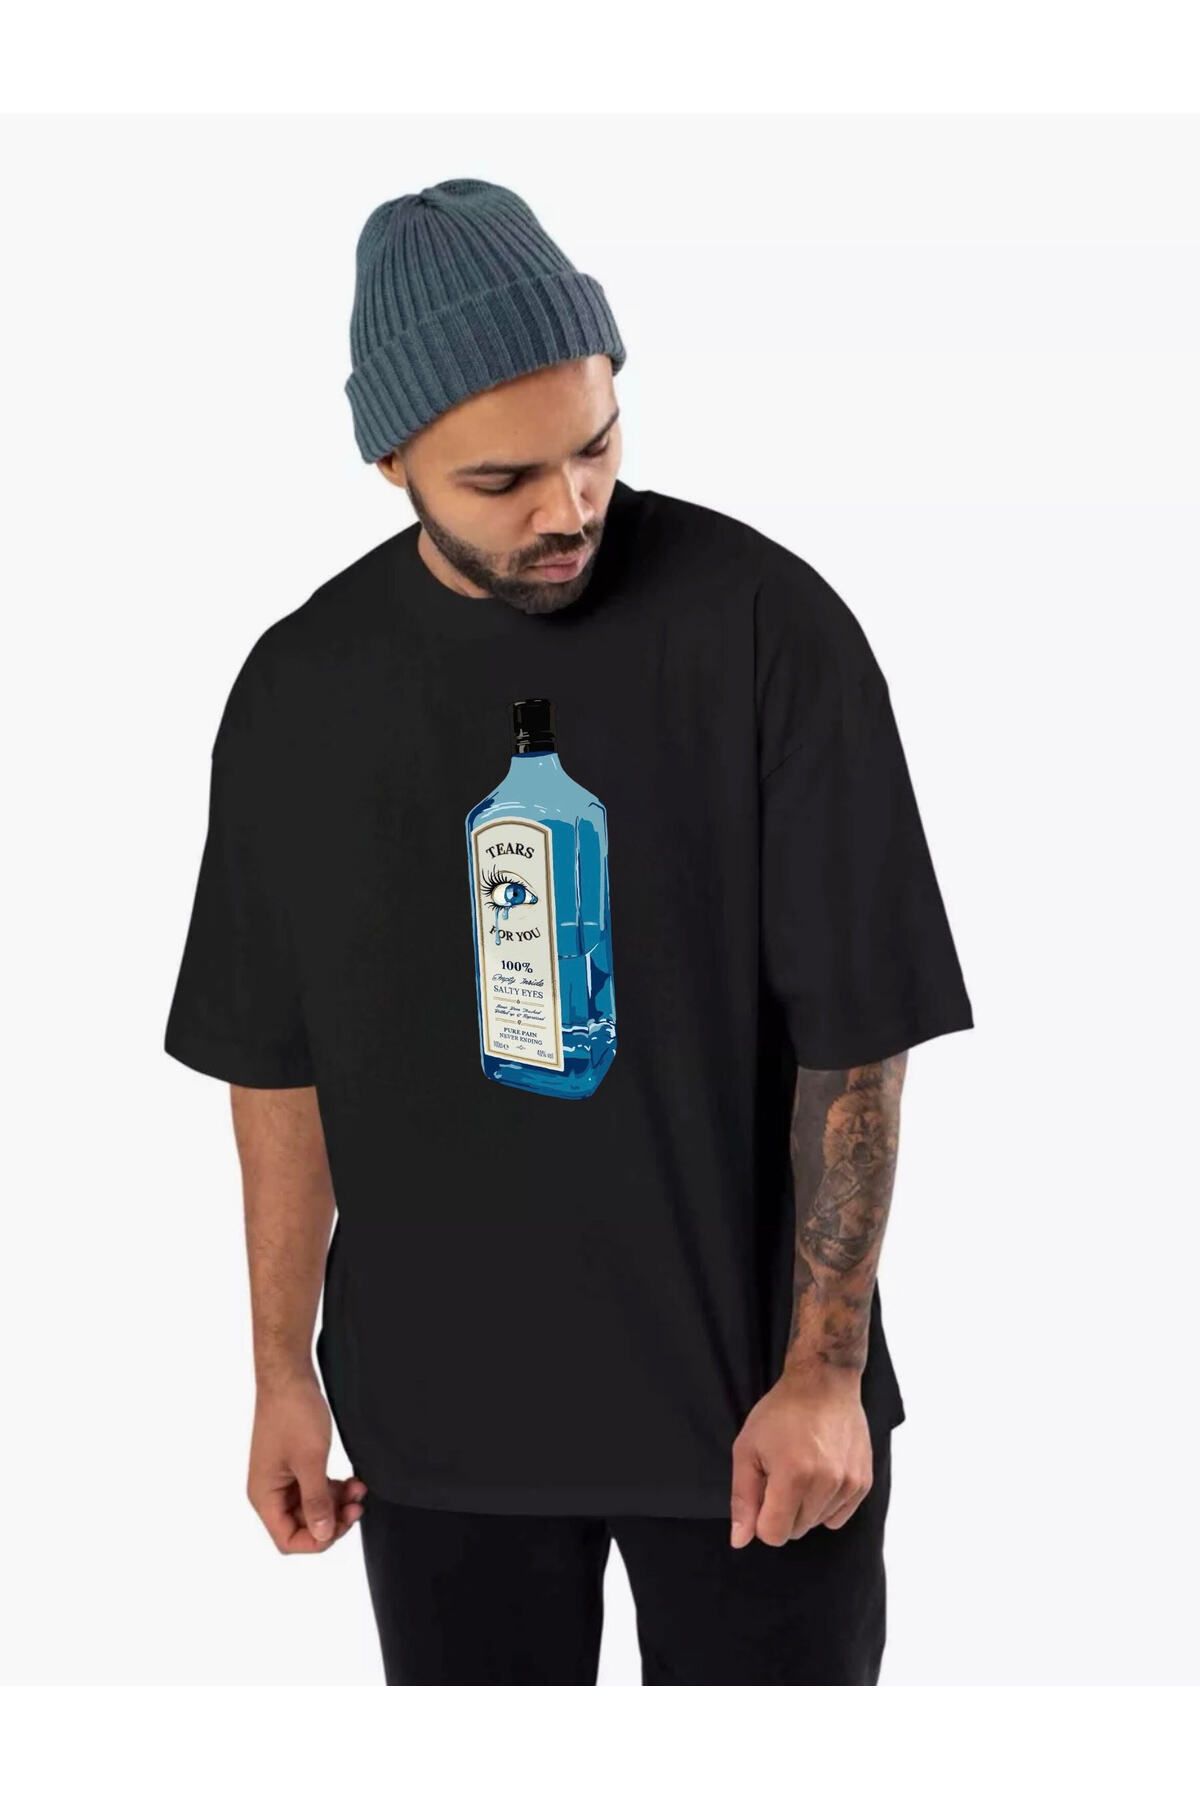 diana store Tears Bottle Gözyaşı Şişesi Baskılı Siyah Kısa Kollu Unisex Oversize Tişört